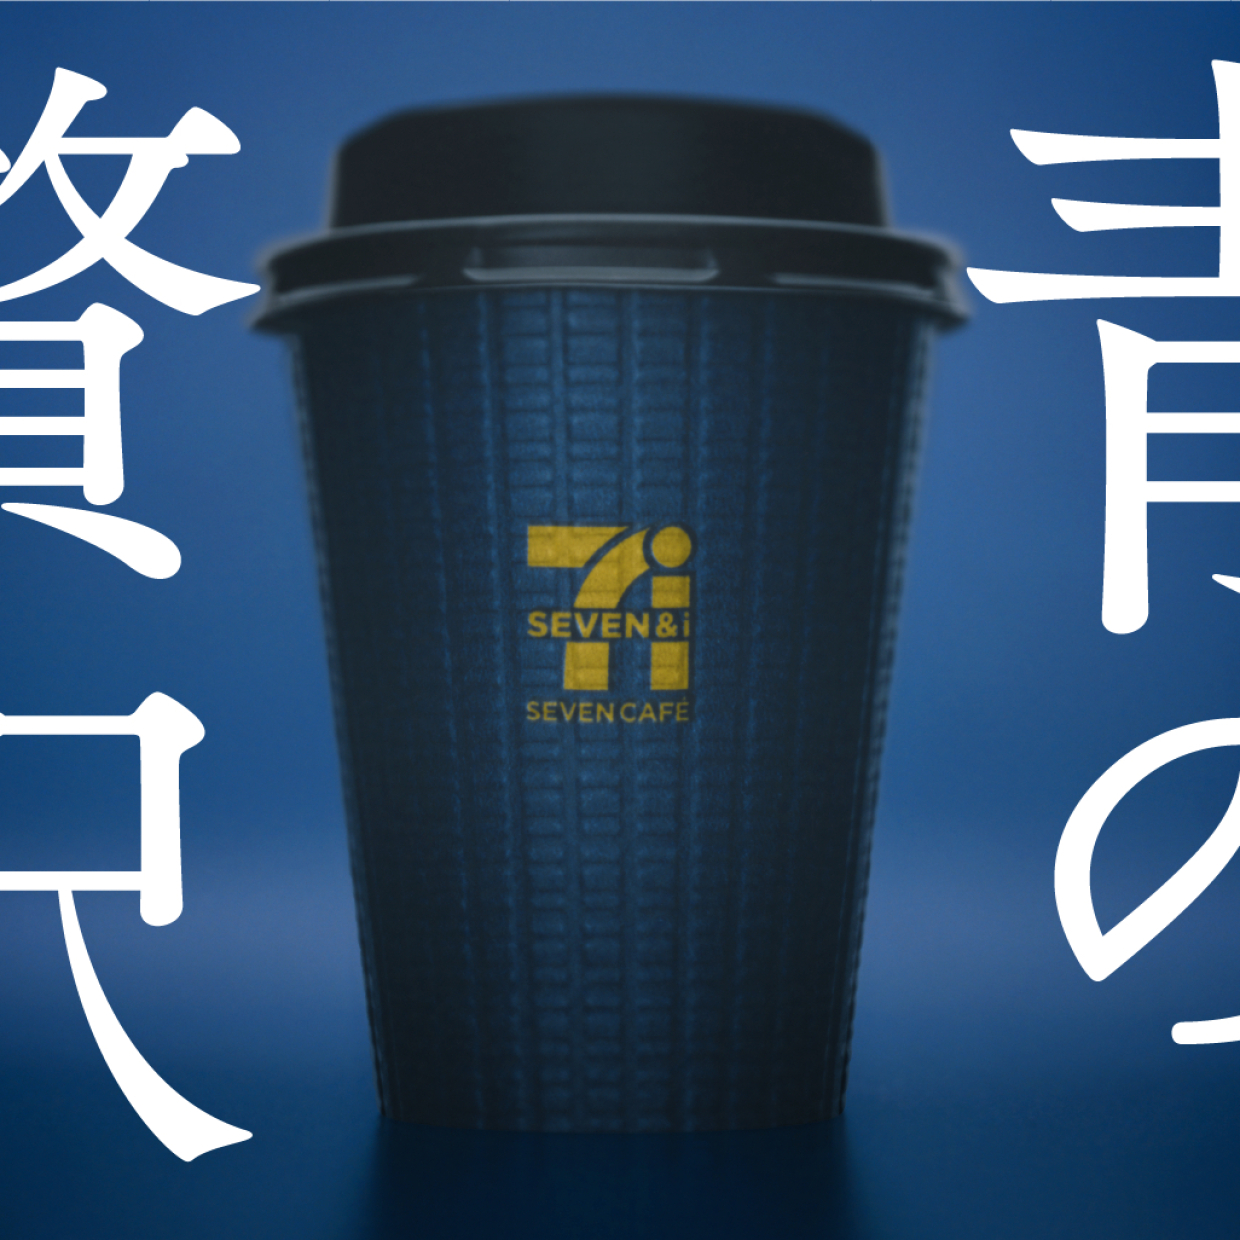  【セブン】青いカップのコーヒー「高級キリマンジャロブレンド」が登場！定番のものと飲み比べてみた！ 